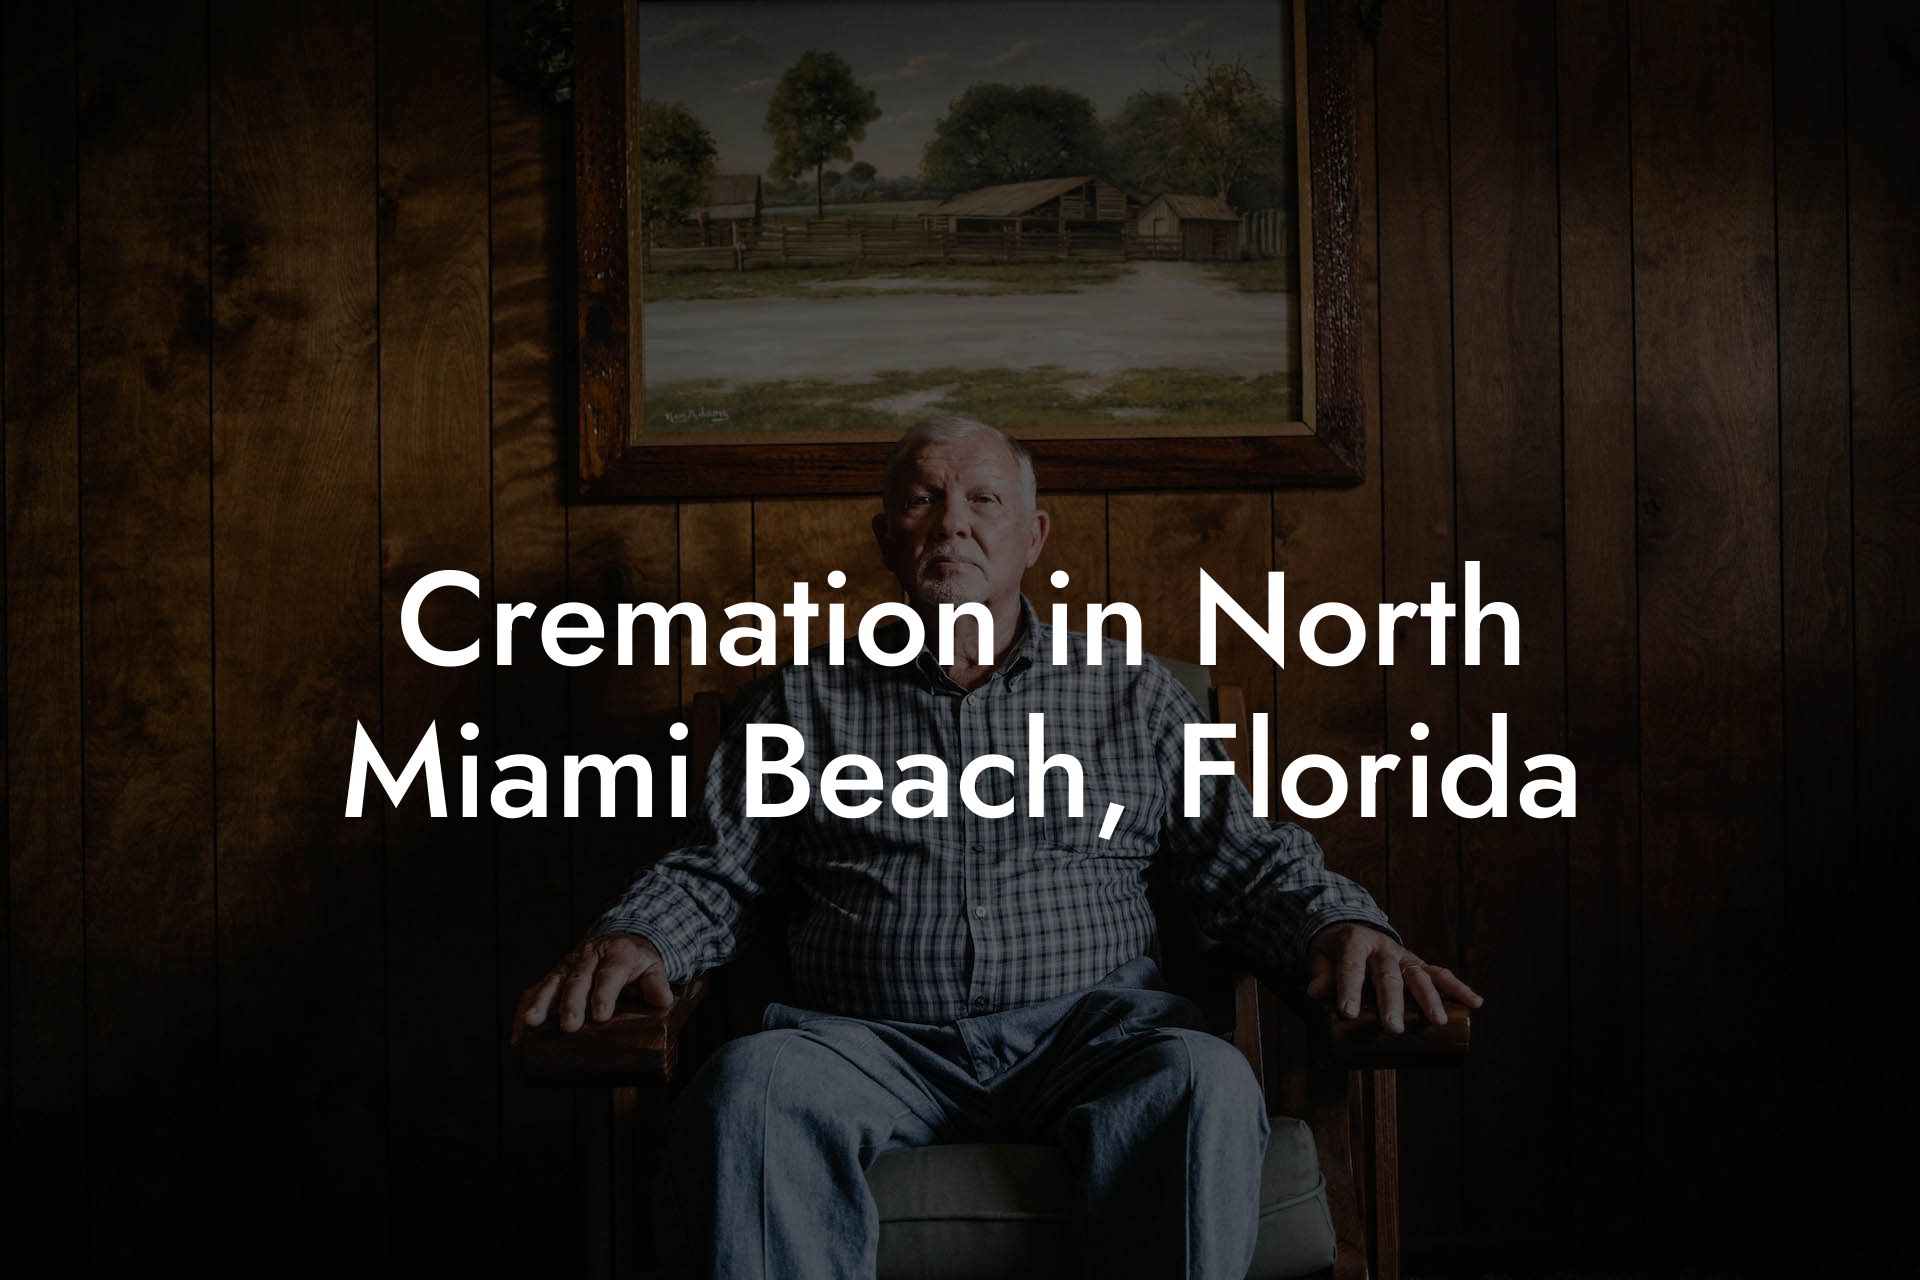 Cremation in North Miami Beach, Florida